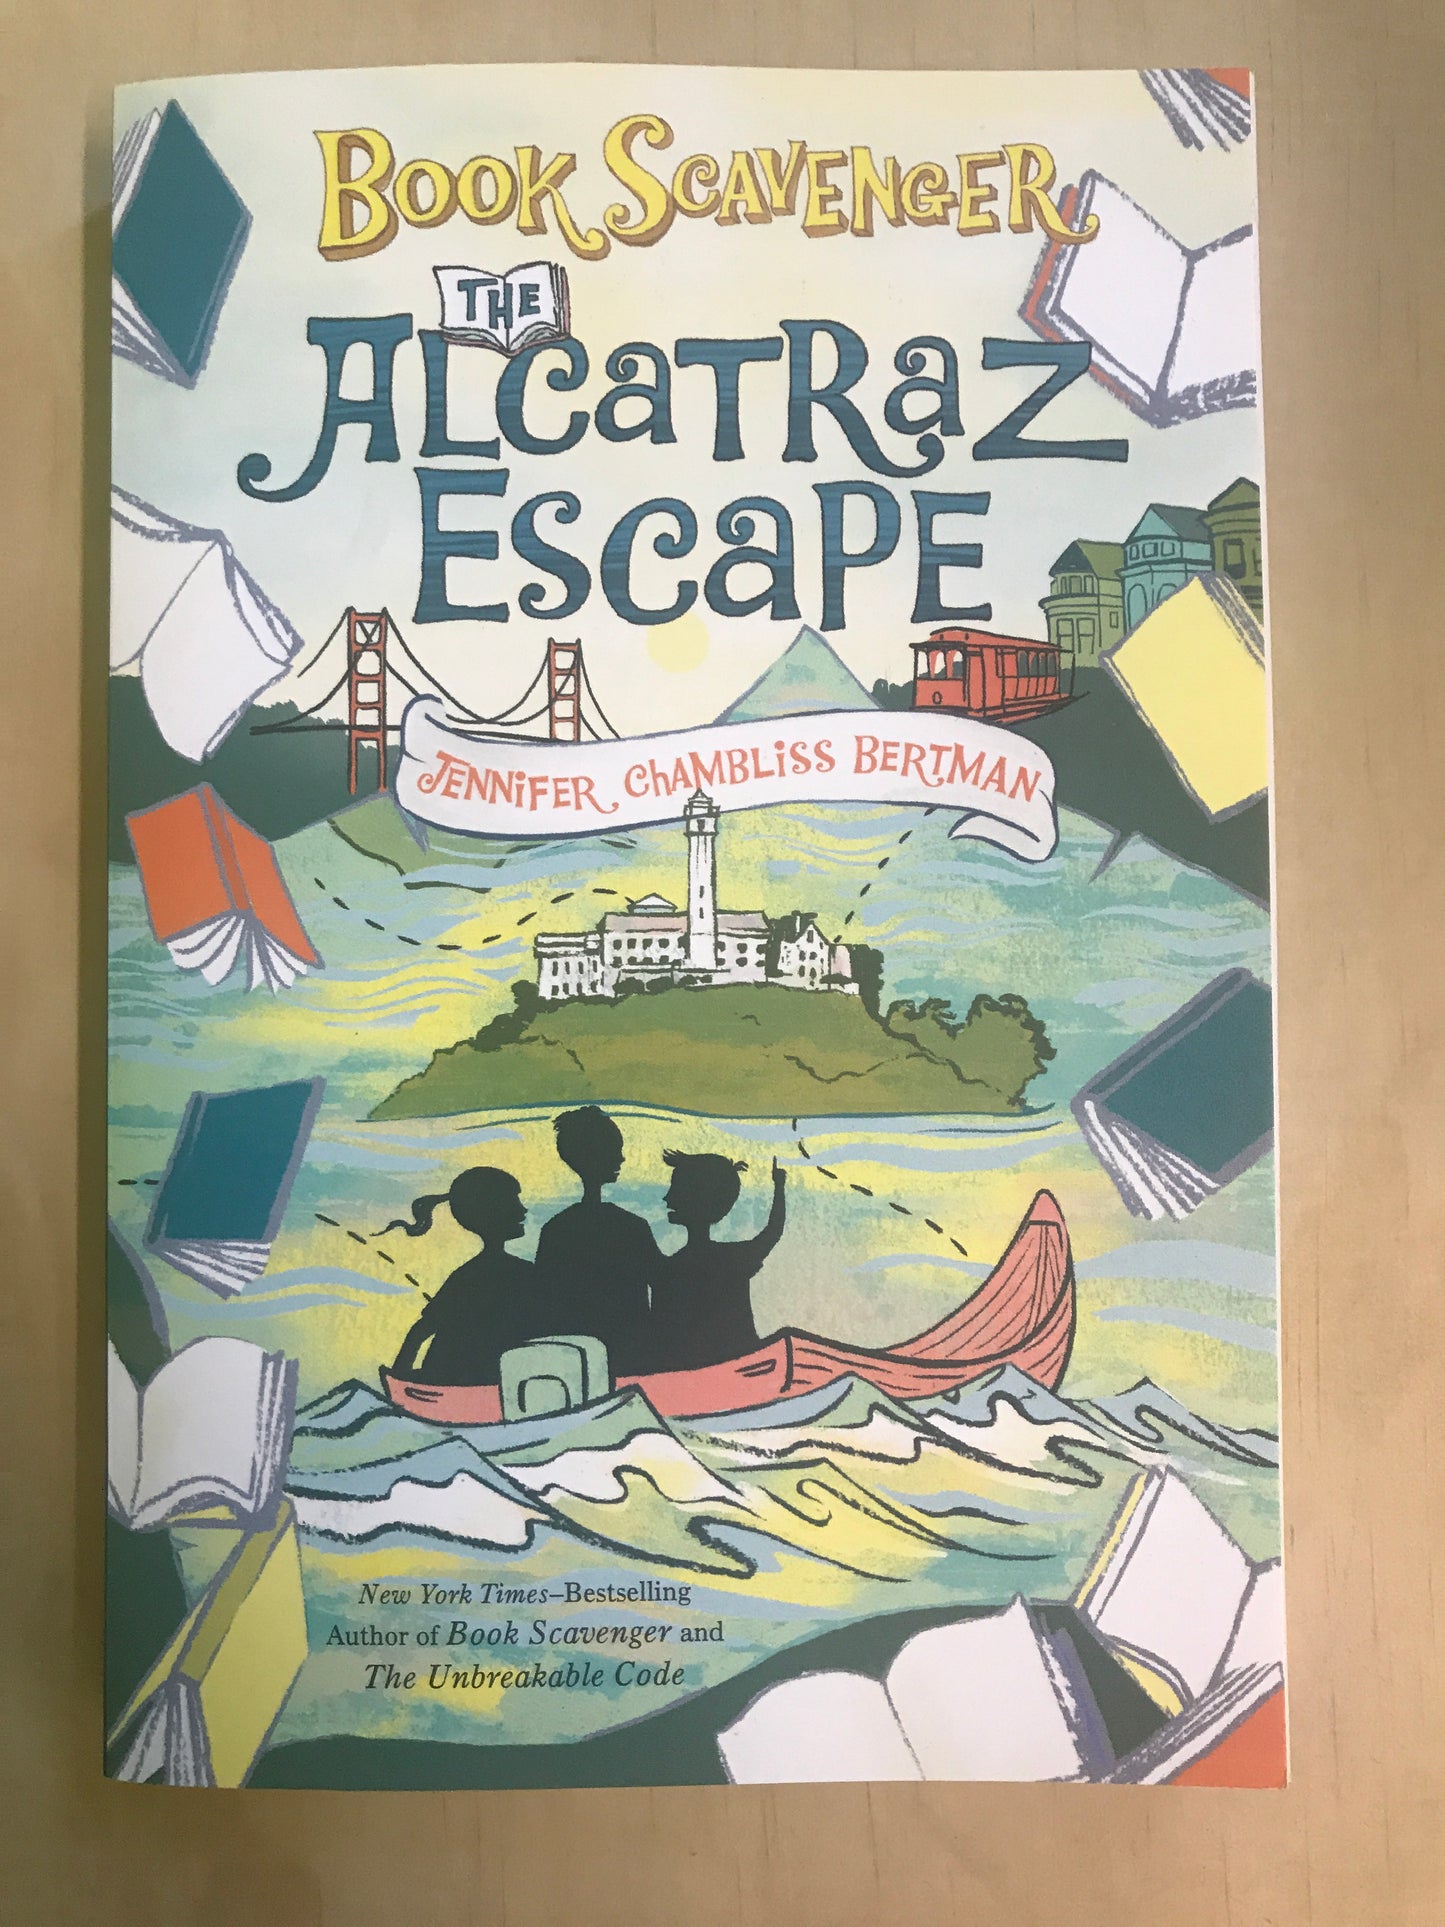 The Alcatraz Escape (Book Scavenger #3)